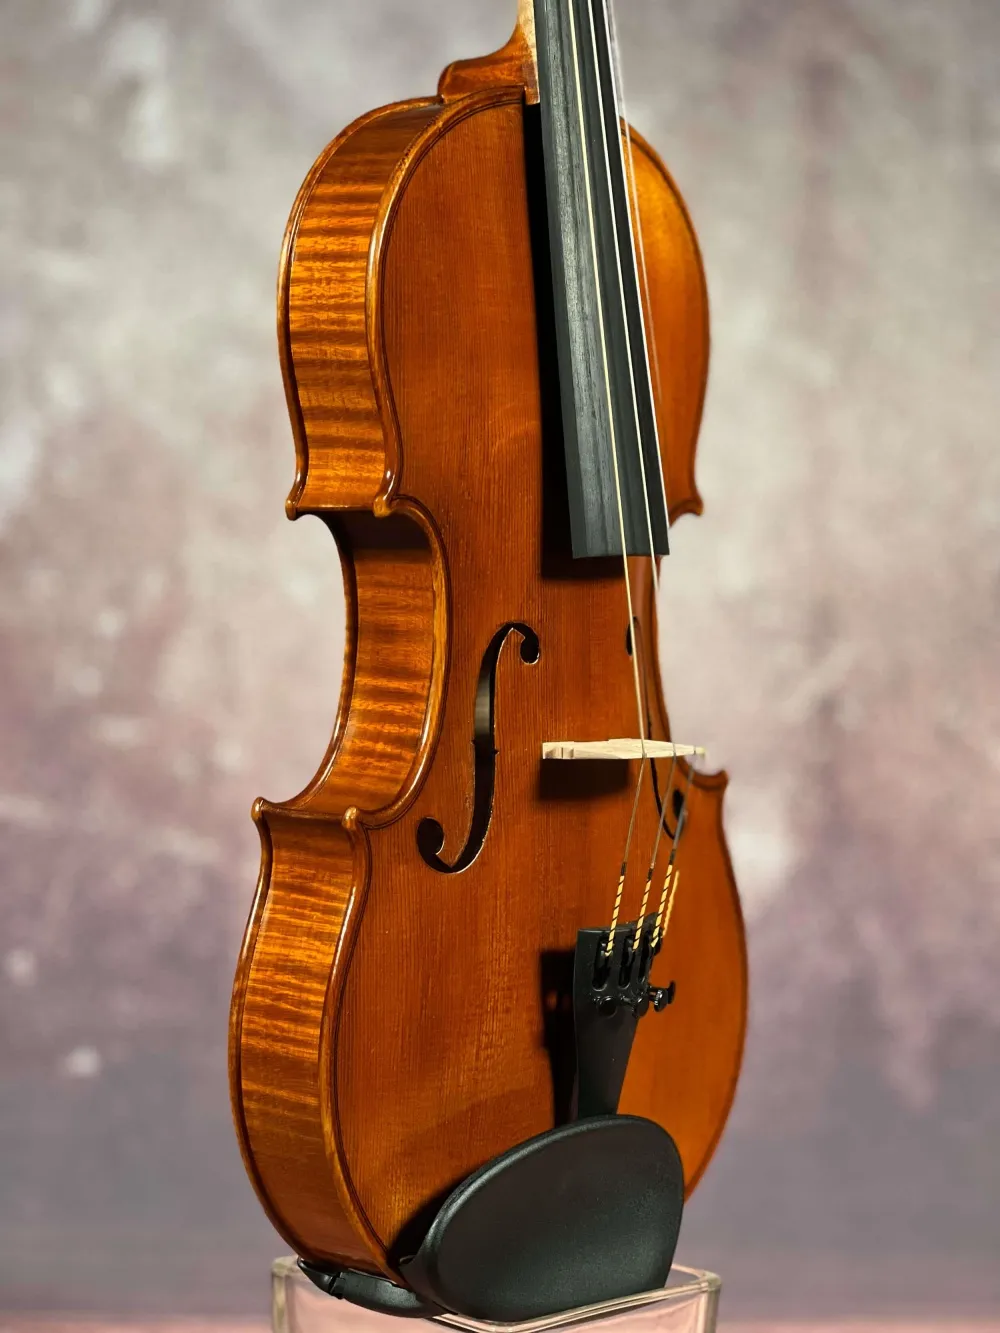 Decke-Zarge-Detailansicht einer Nagy Károly 4/4 \"di Bottega\" Geige (Violine), genaut in Reghin, RO